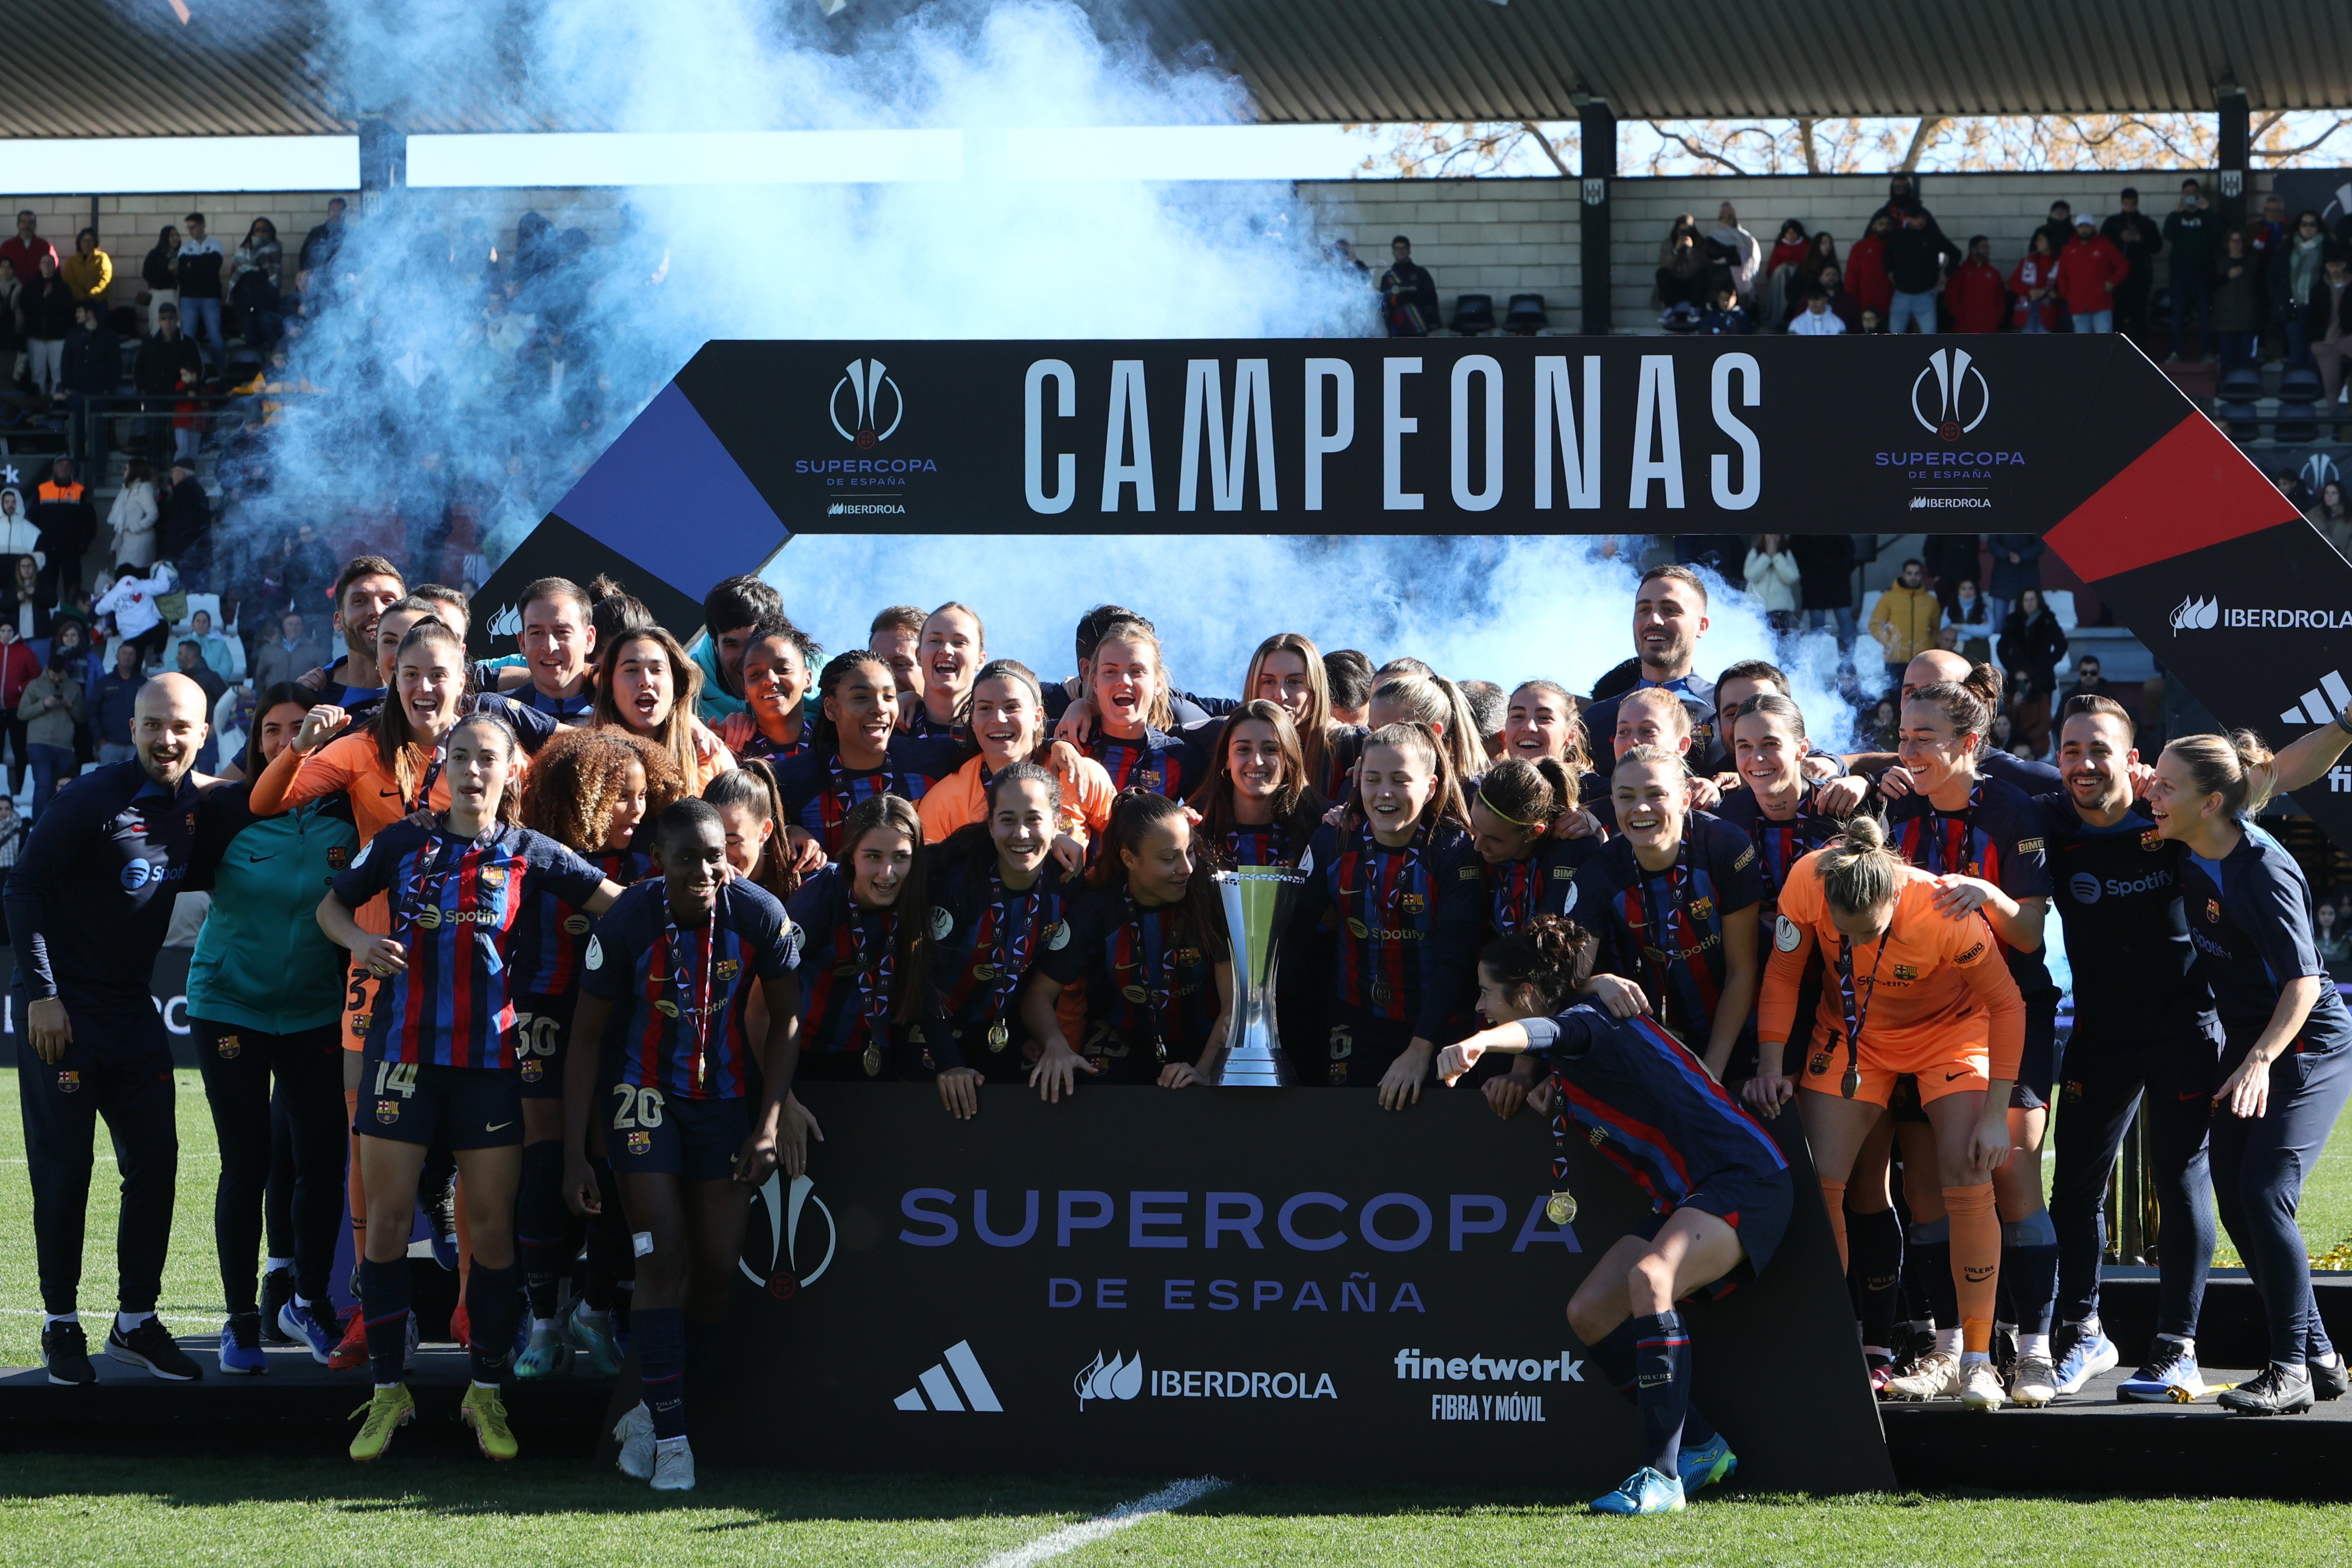 El Barça femení triomfa contra la Reial Societat i s'adjudica la Supercopa d'Espanya (0-3)